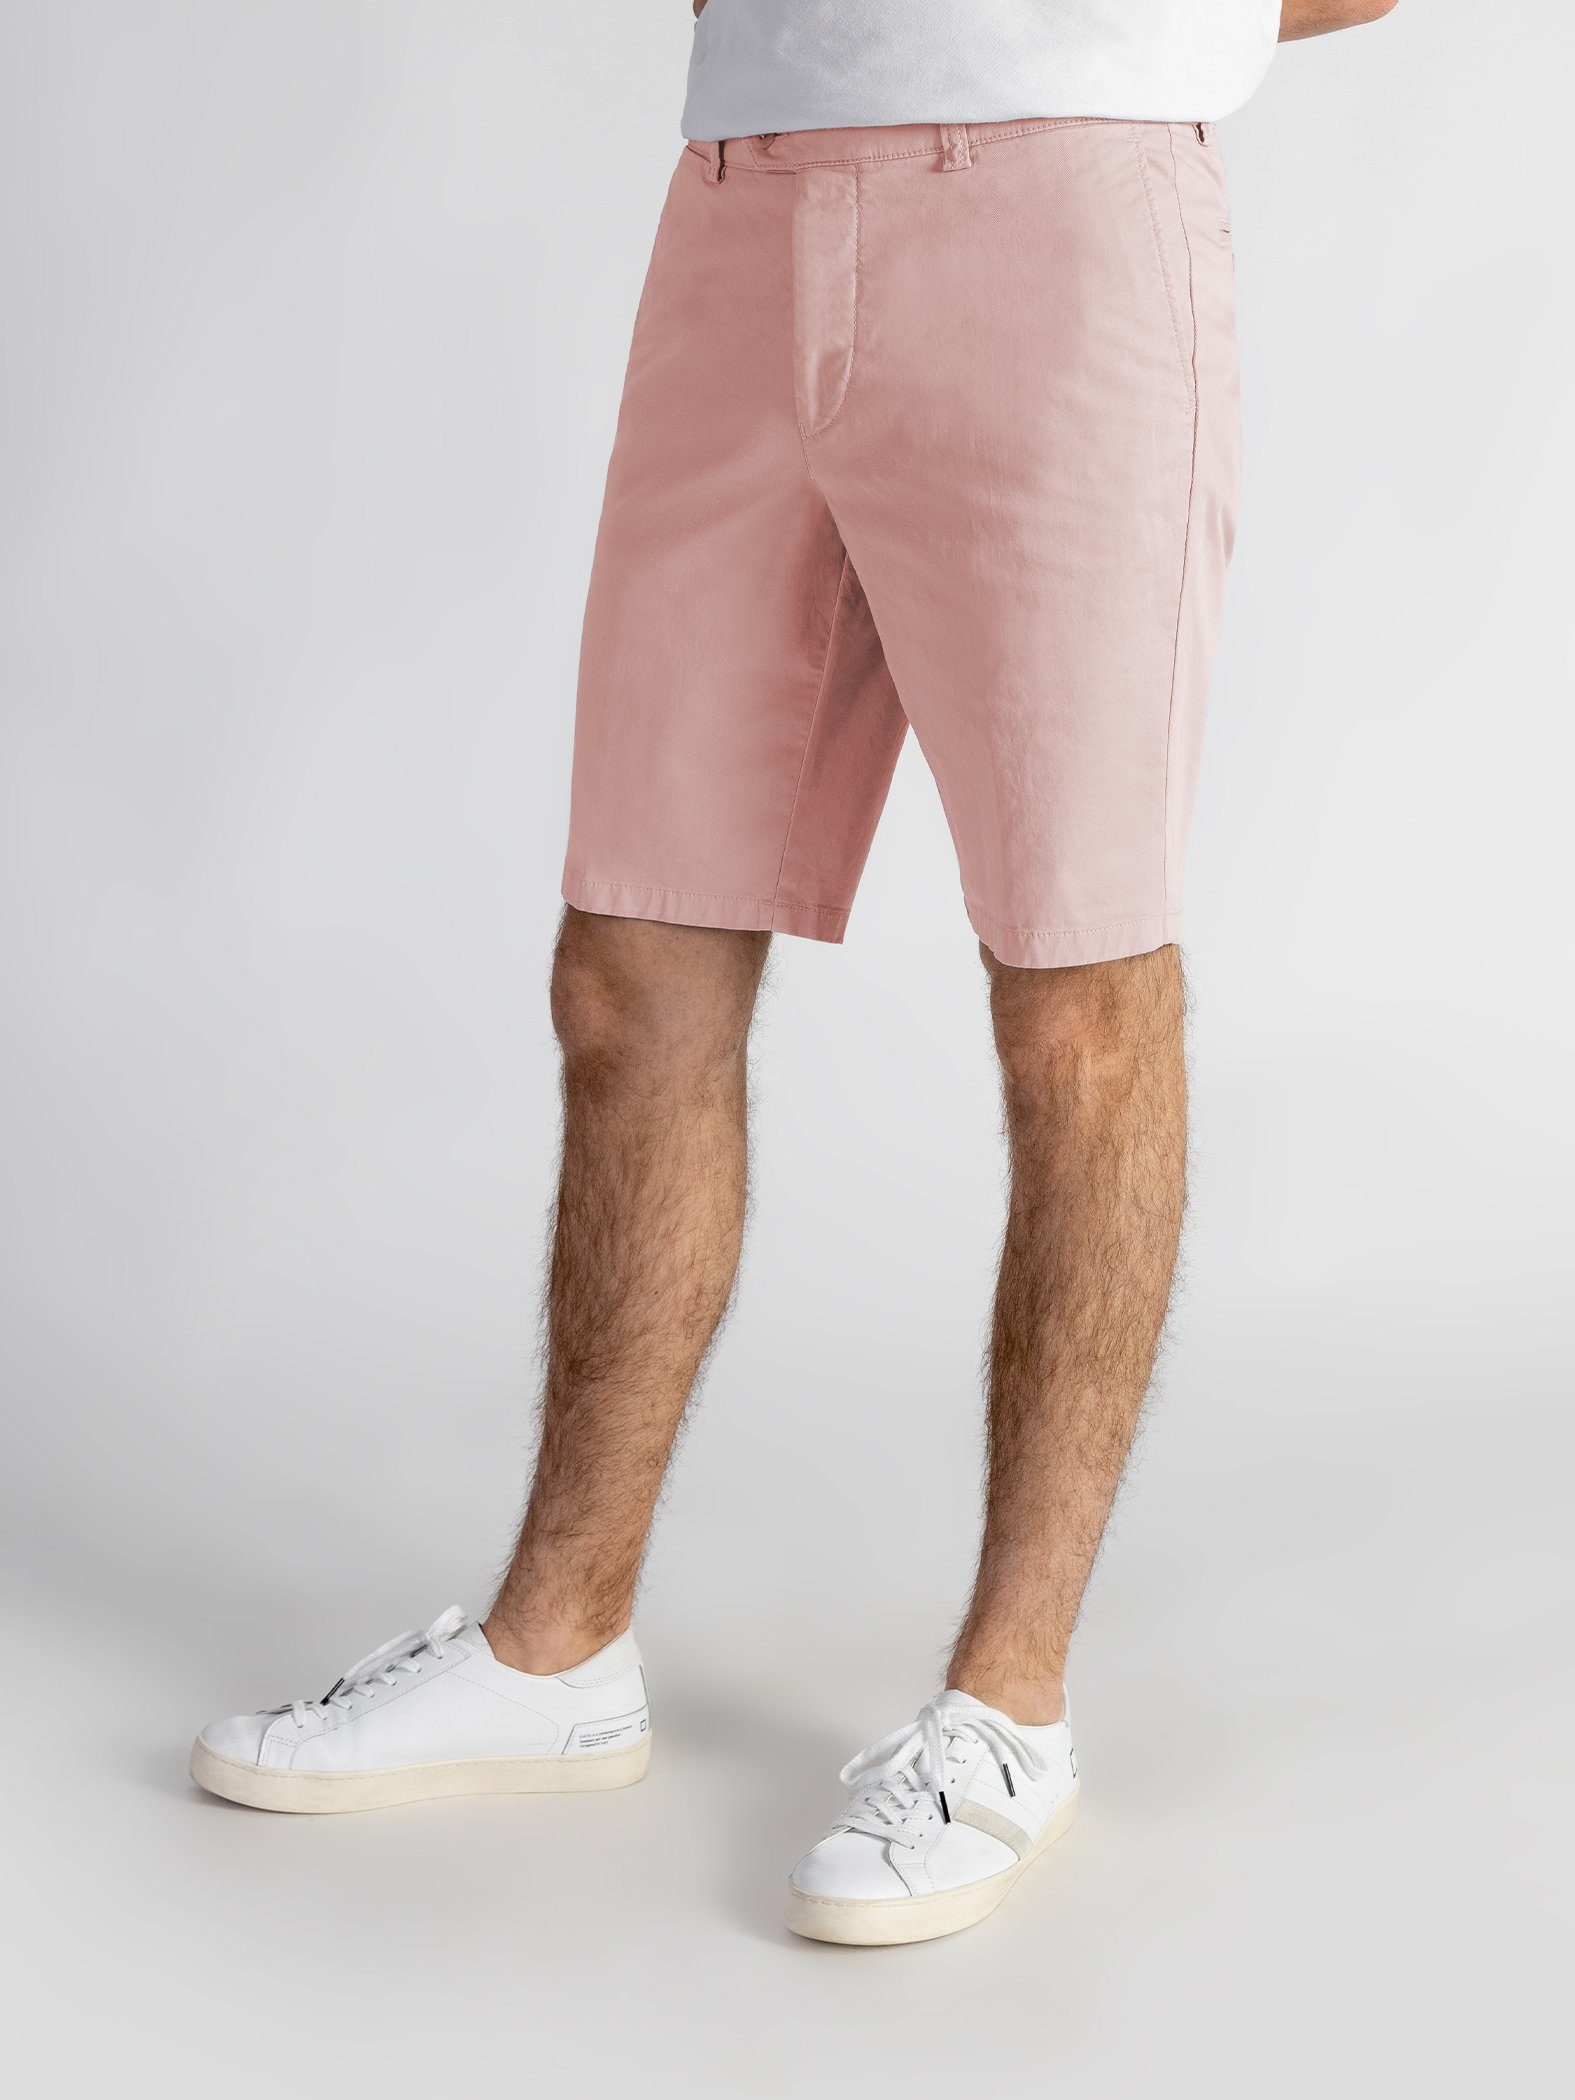 TwoMates Shorts GOTS-zertifiziert Farbauswahl, elastischem rosa Bund, mit Shorts